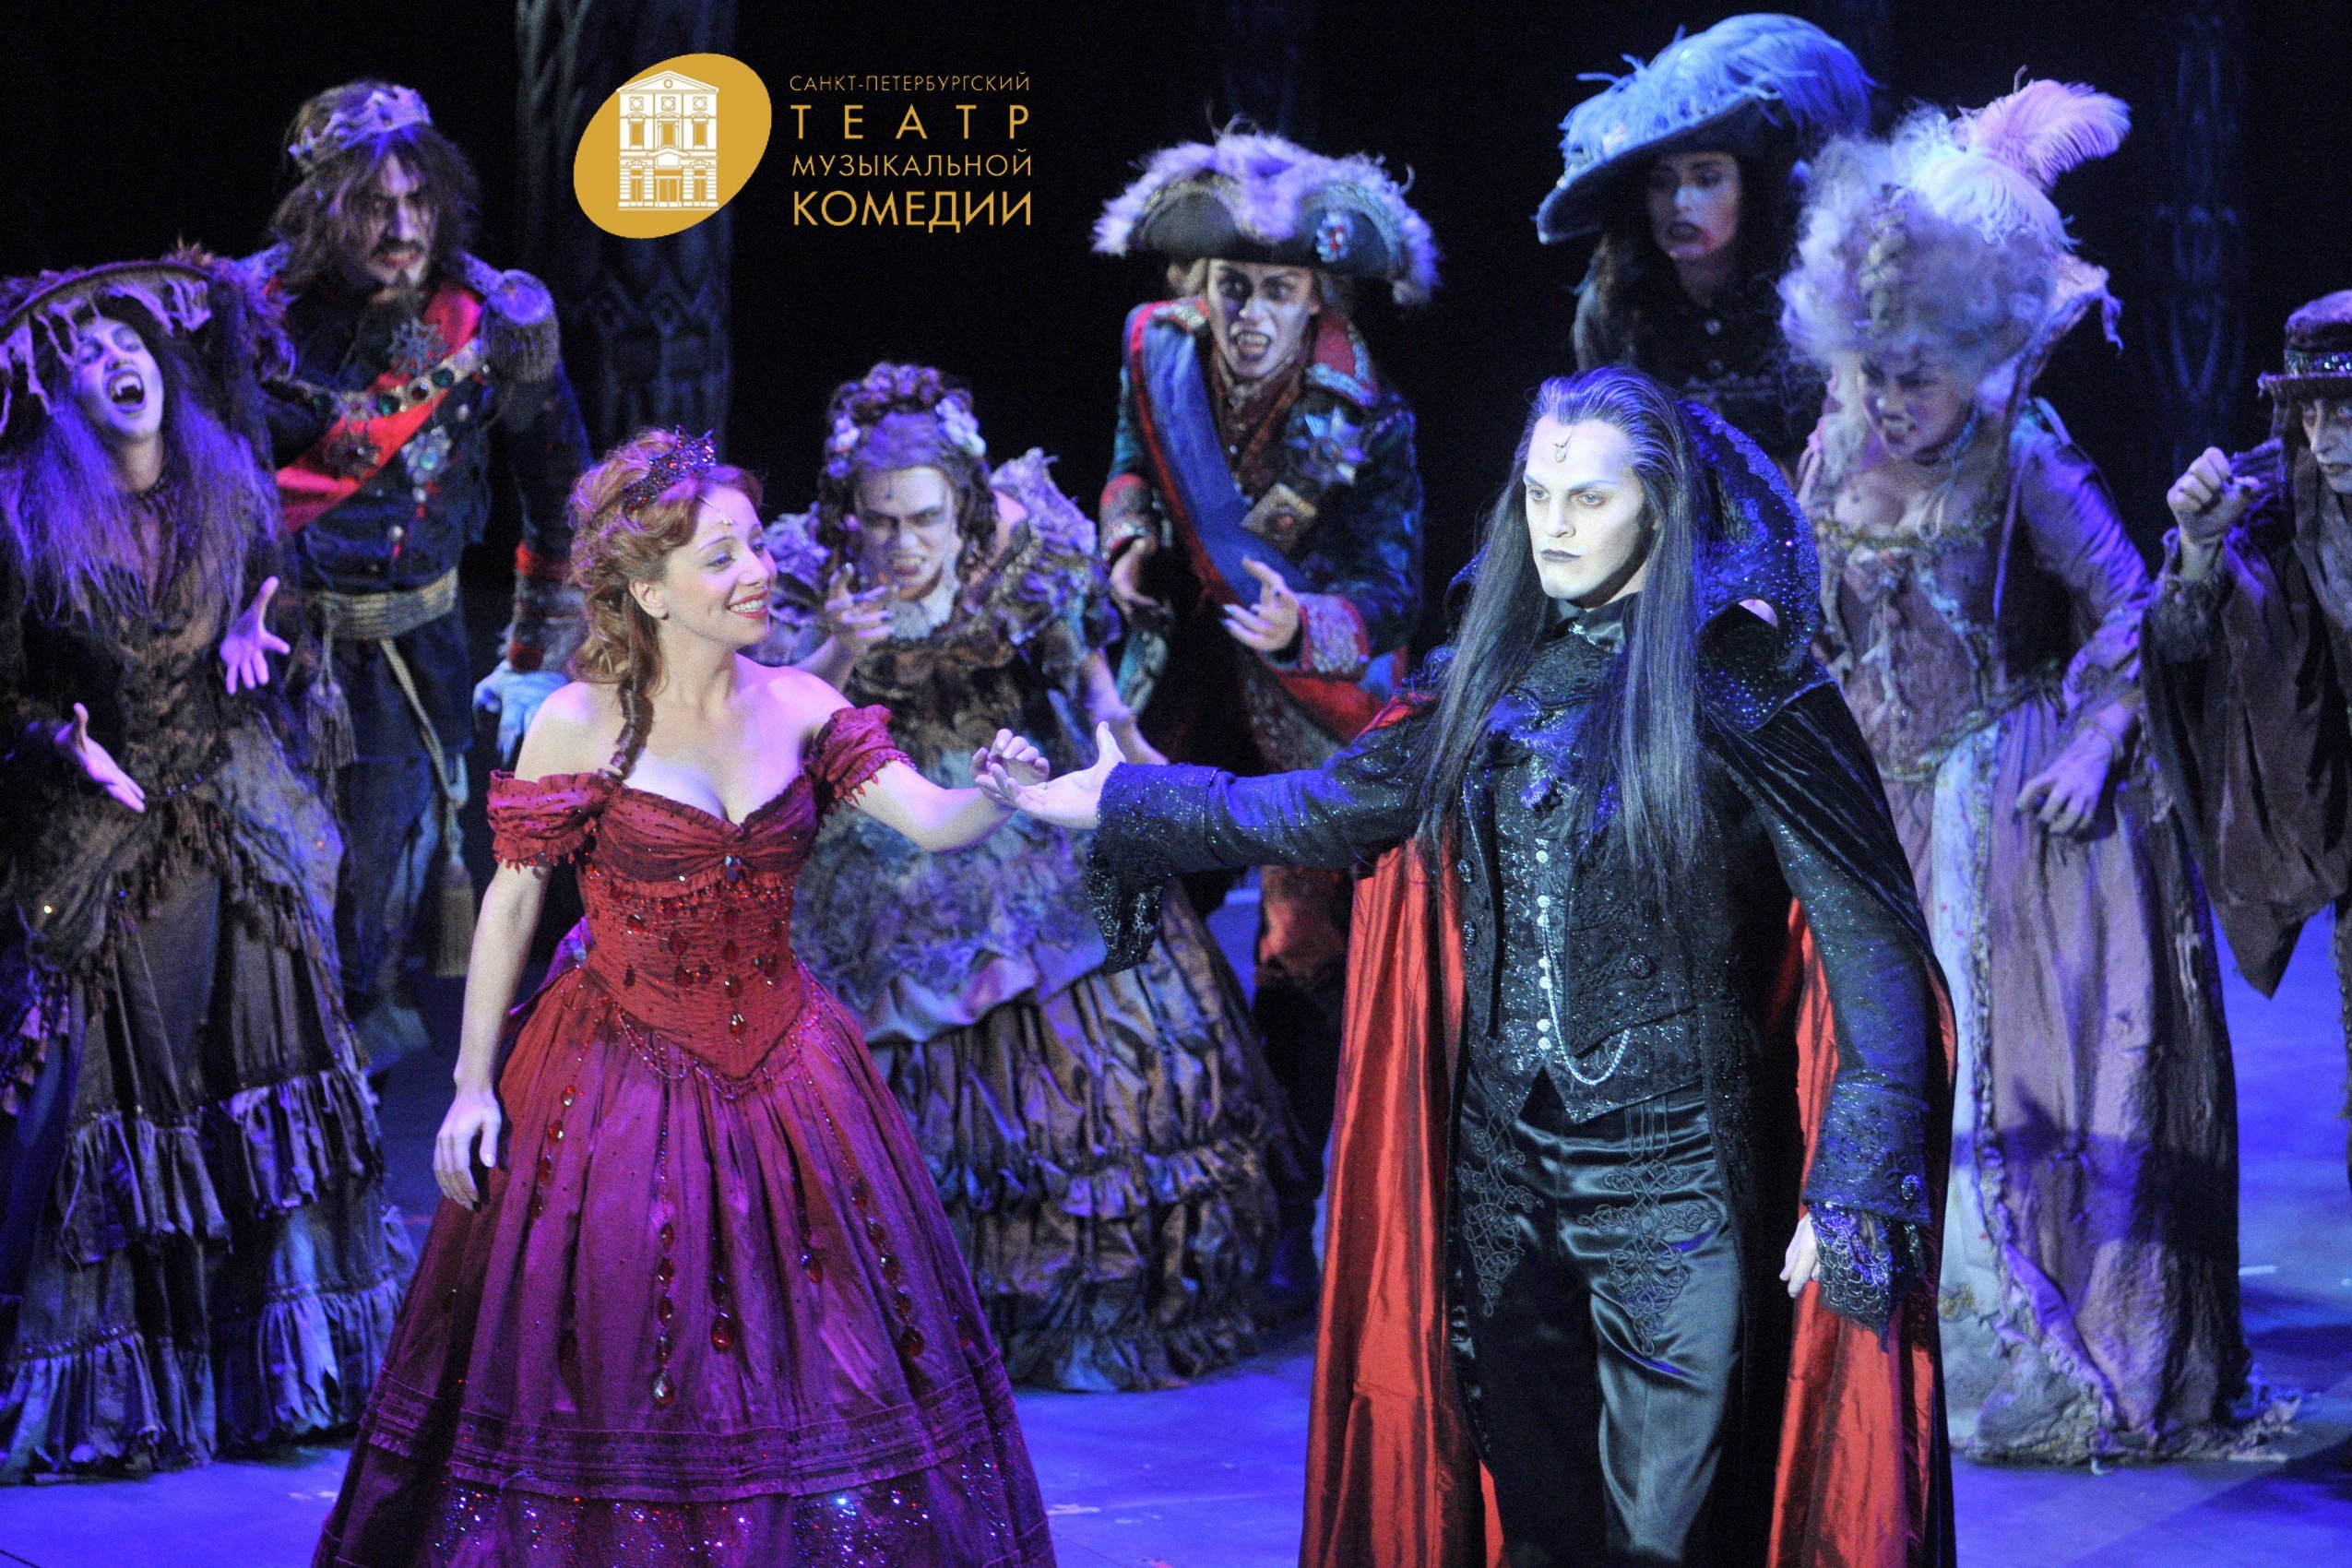 Через 12 років Роман Поланскі здійснив постановку нової редакції «Бала вампірів», яка побачила світ 17 вересня 2009 року на сцені театру «Ронахер»